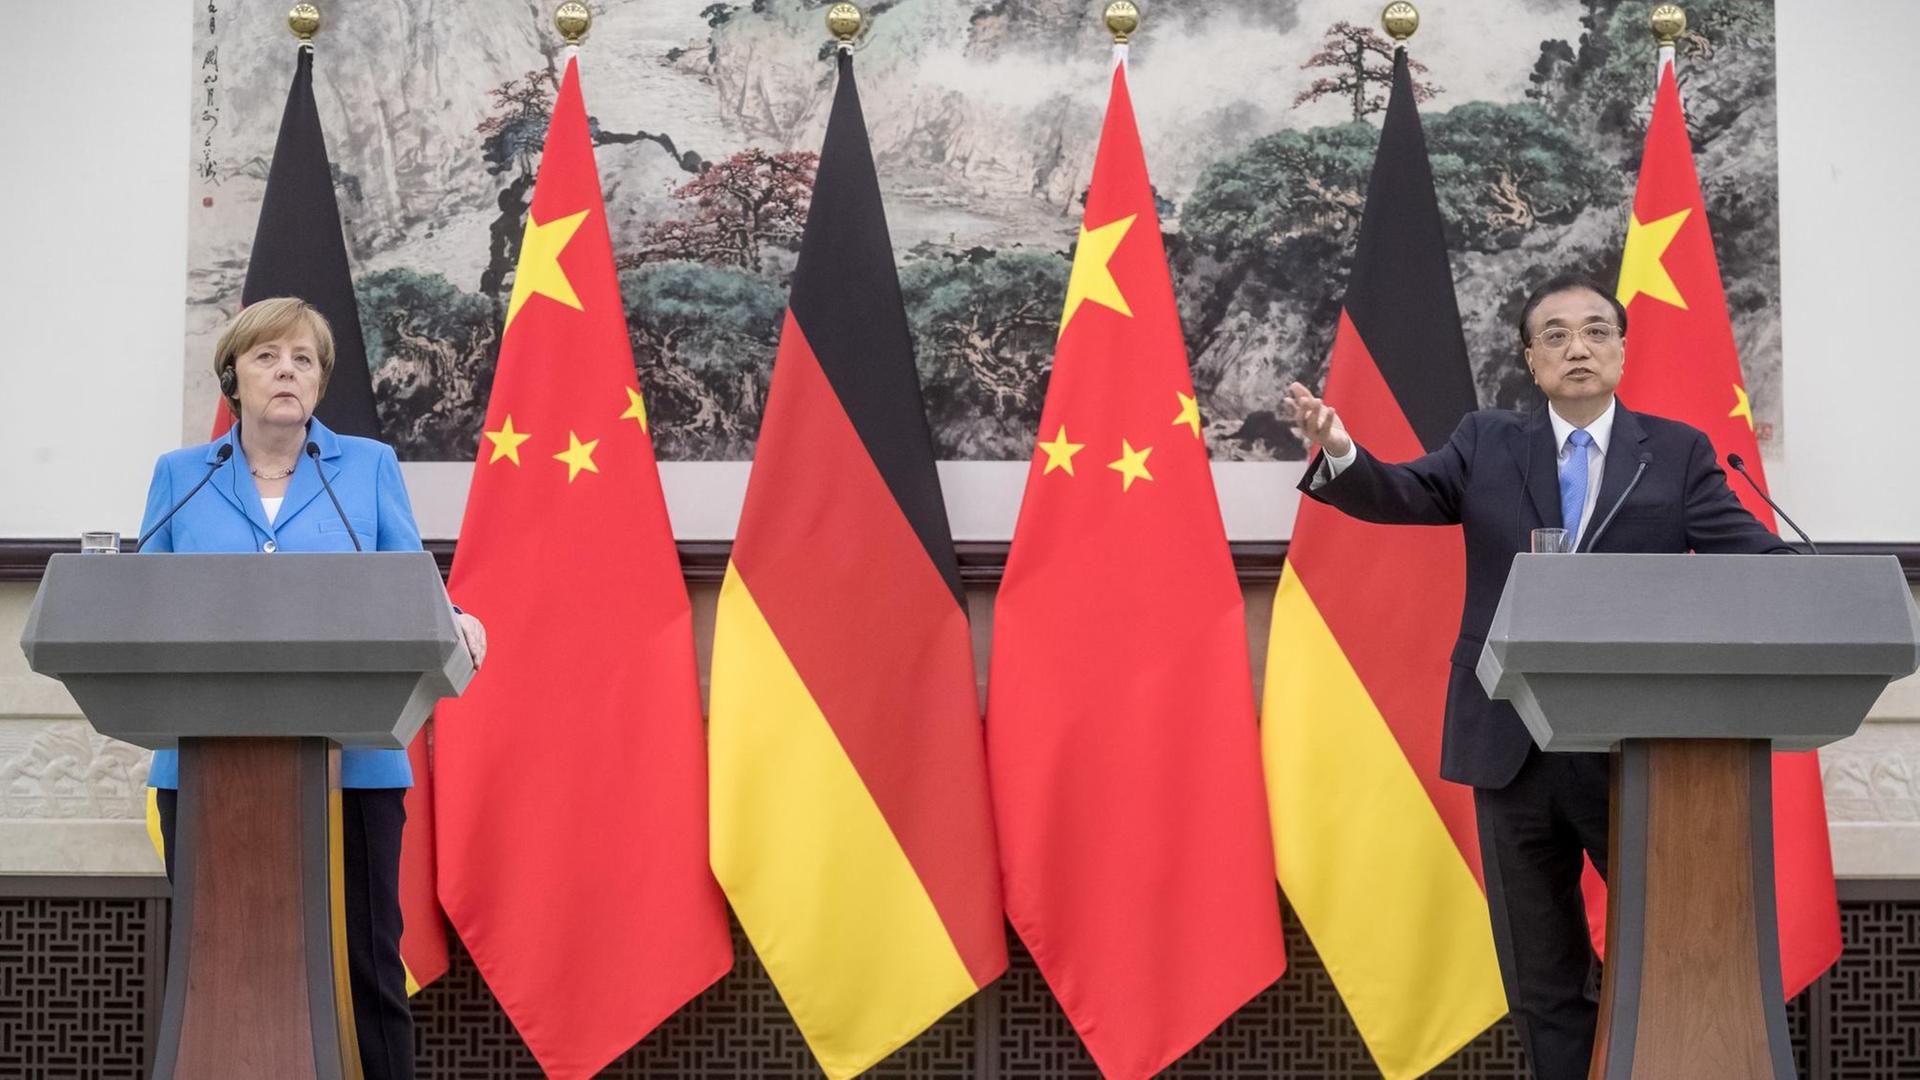 24.05.2018, Peking, China: Bundeskanzlerin Angela Merkel (CDU) steht bei einer Pressekonferenz in der Großen Halle des Volkes neben dem chinesischen Ministerpräsidenten Li Keqiang.